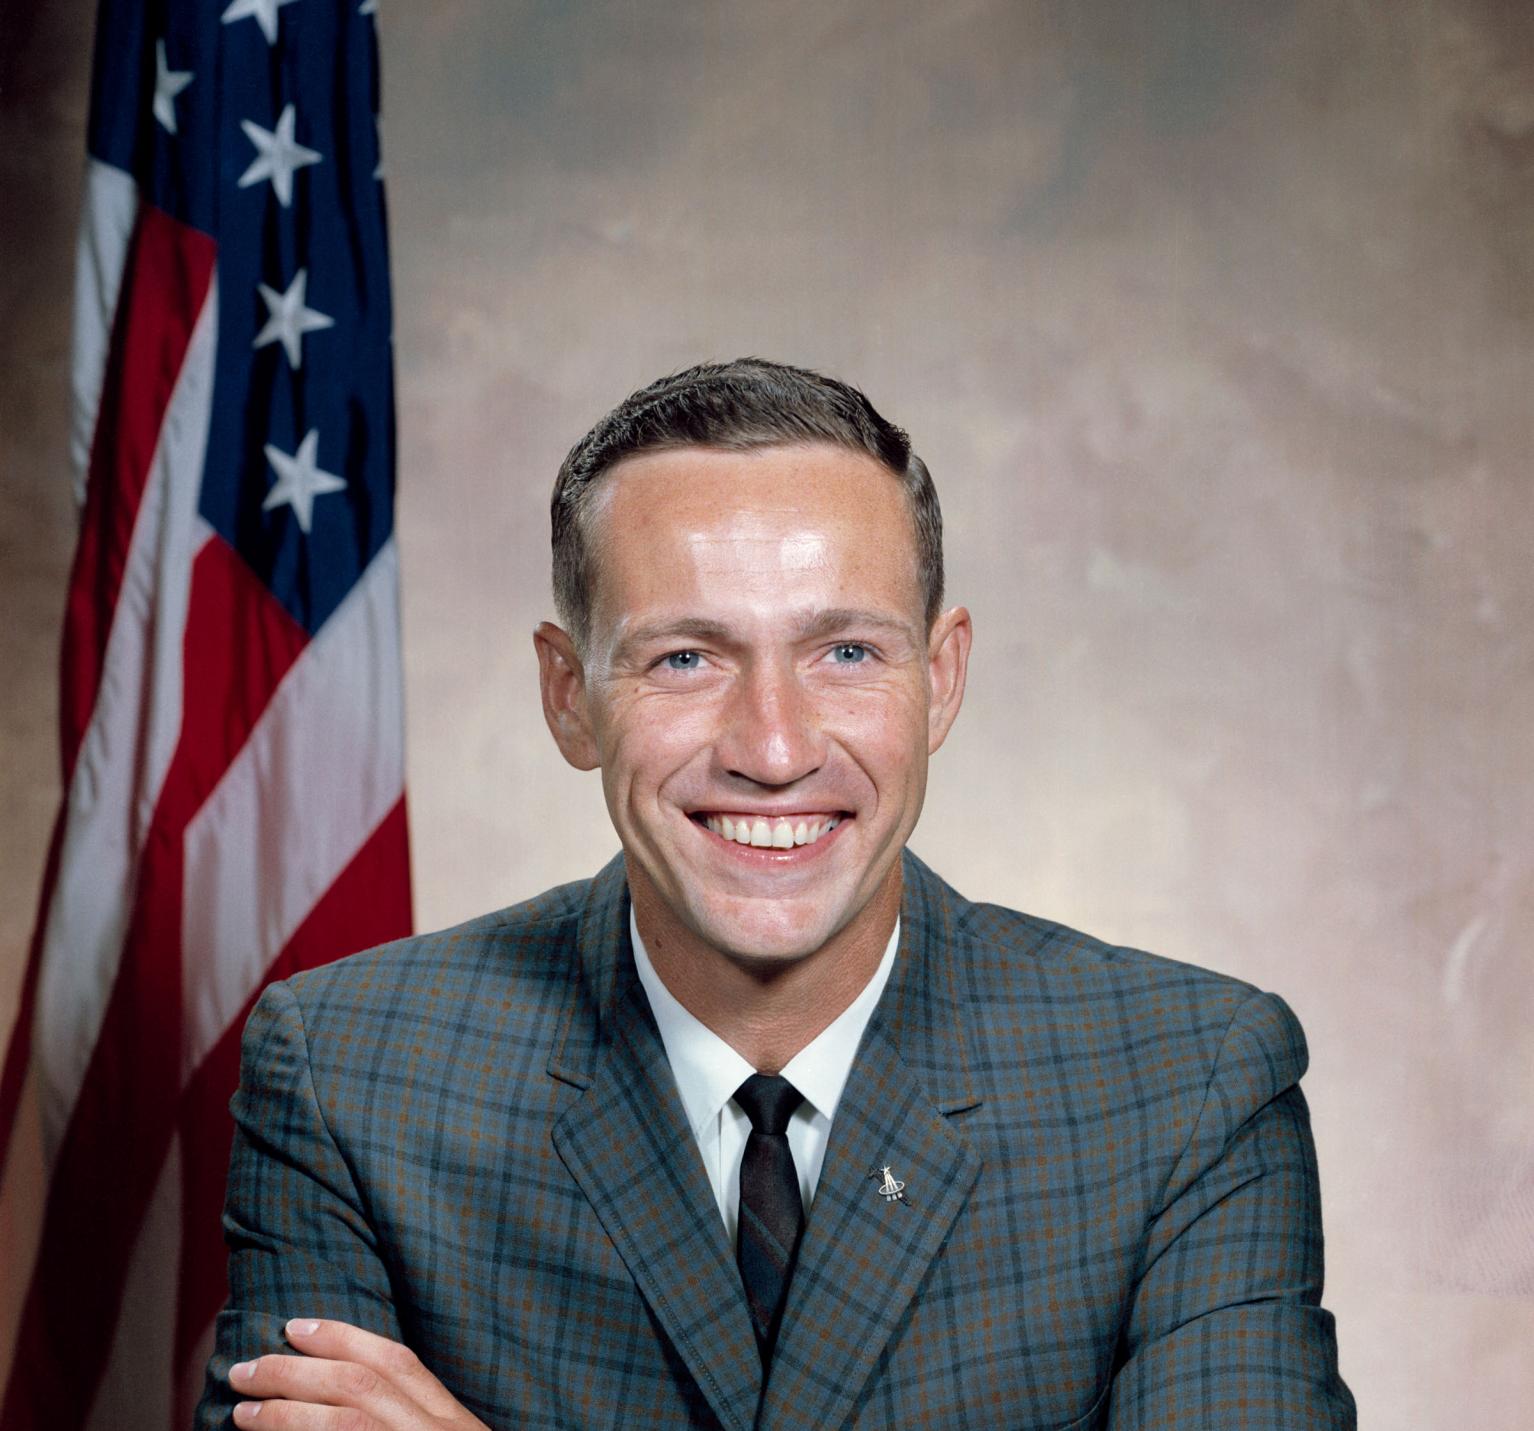 Portrait of astronaut Donn F. Eisele